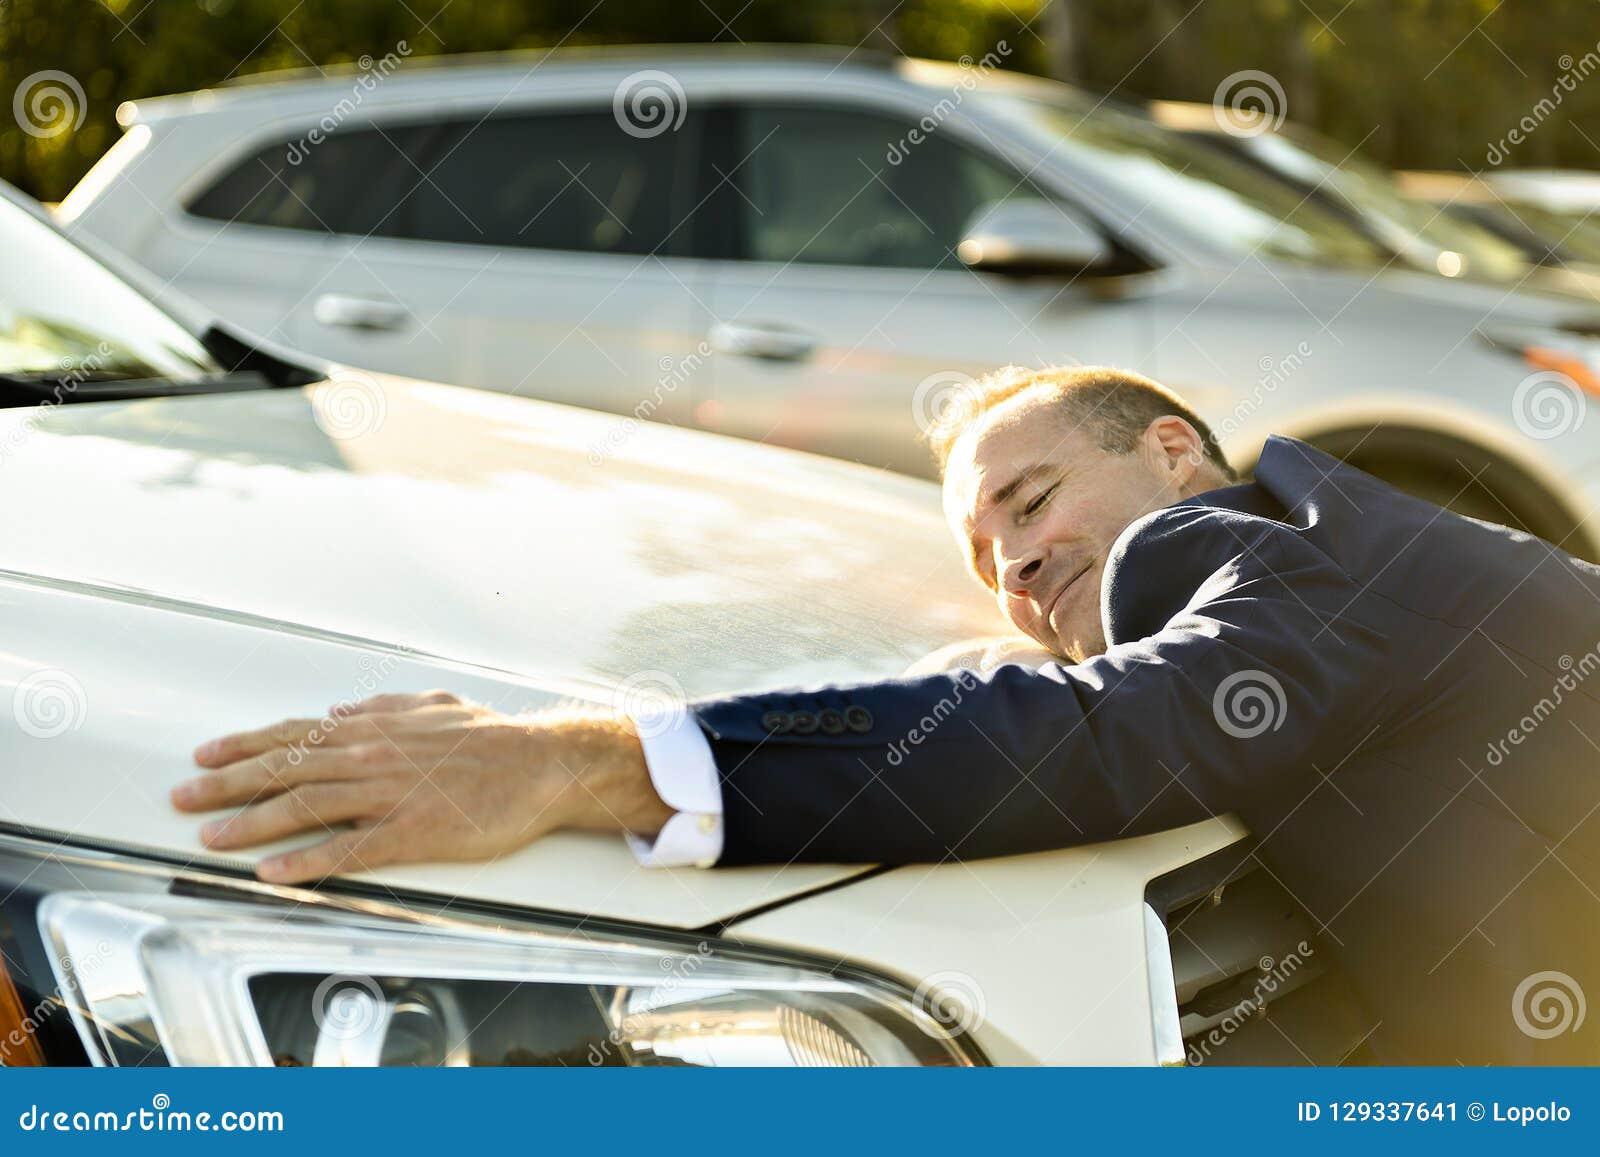 Обнимая машину. Мужчина о нимает машину. Обнимает машину. Мужик обнимает машину. Мужчина обнимает автомобиль.